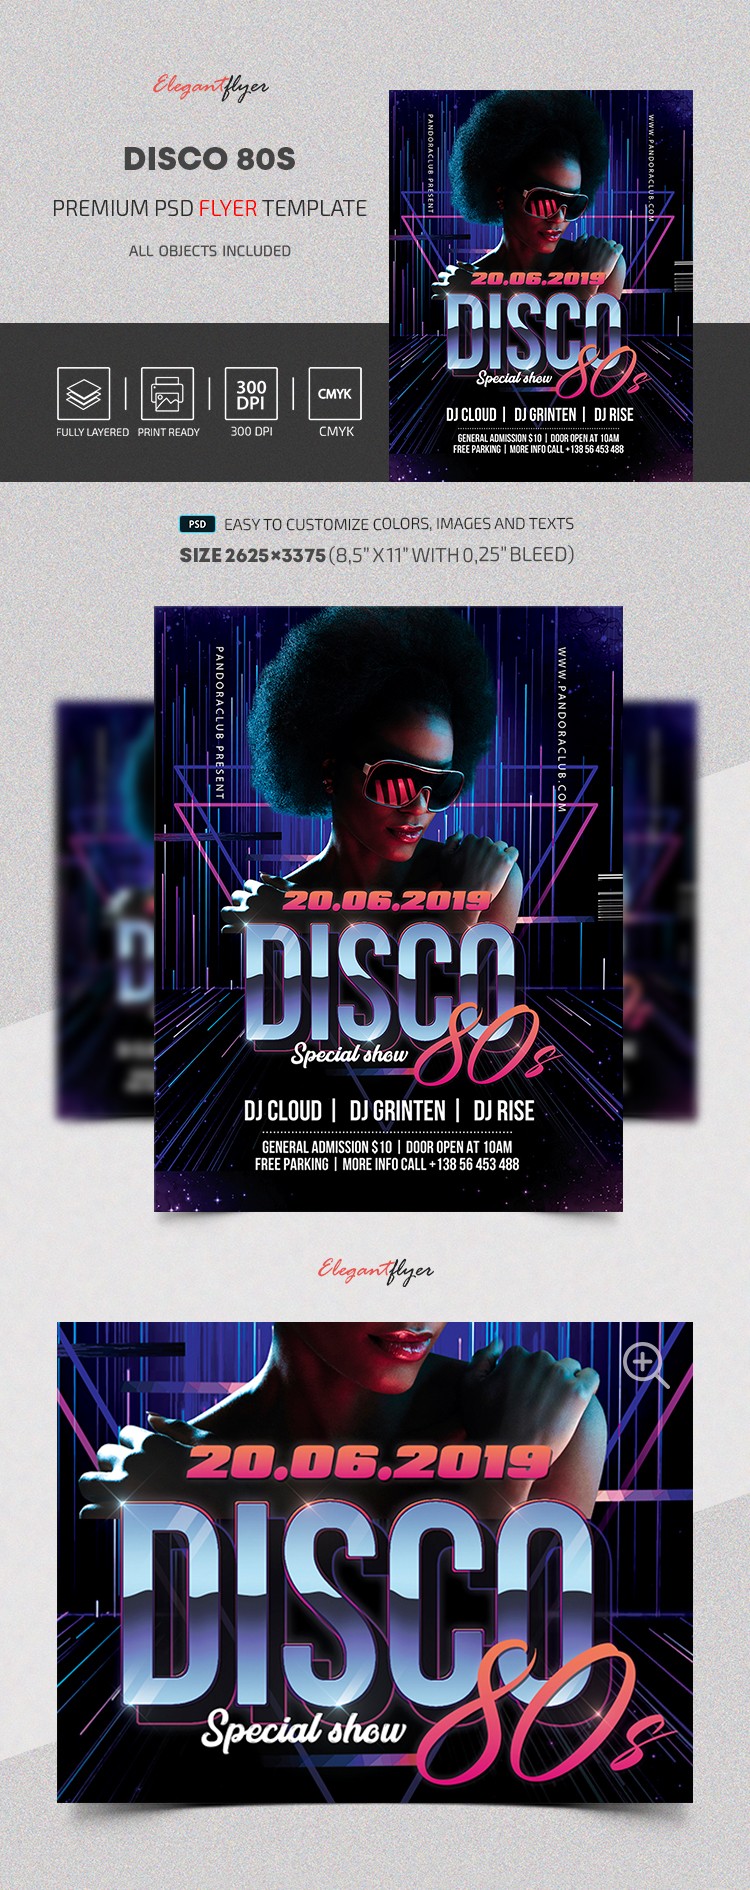 Disco 80er Jahre by ElegantFlyer